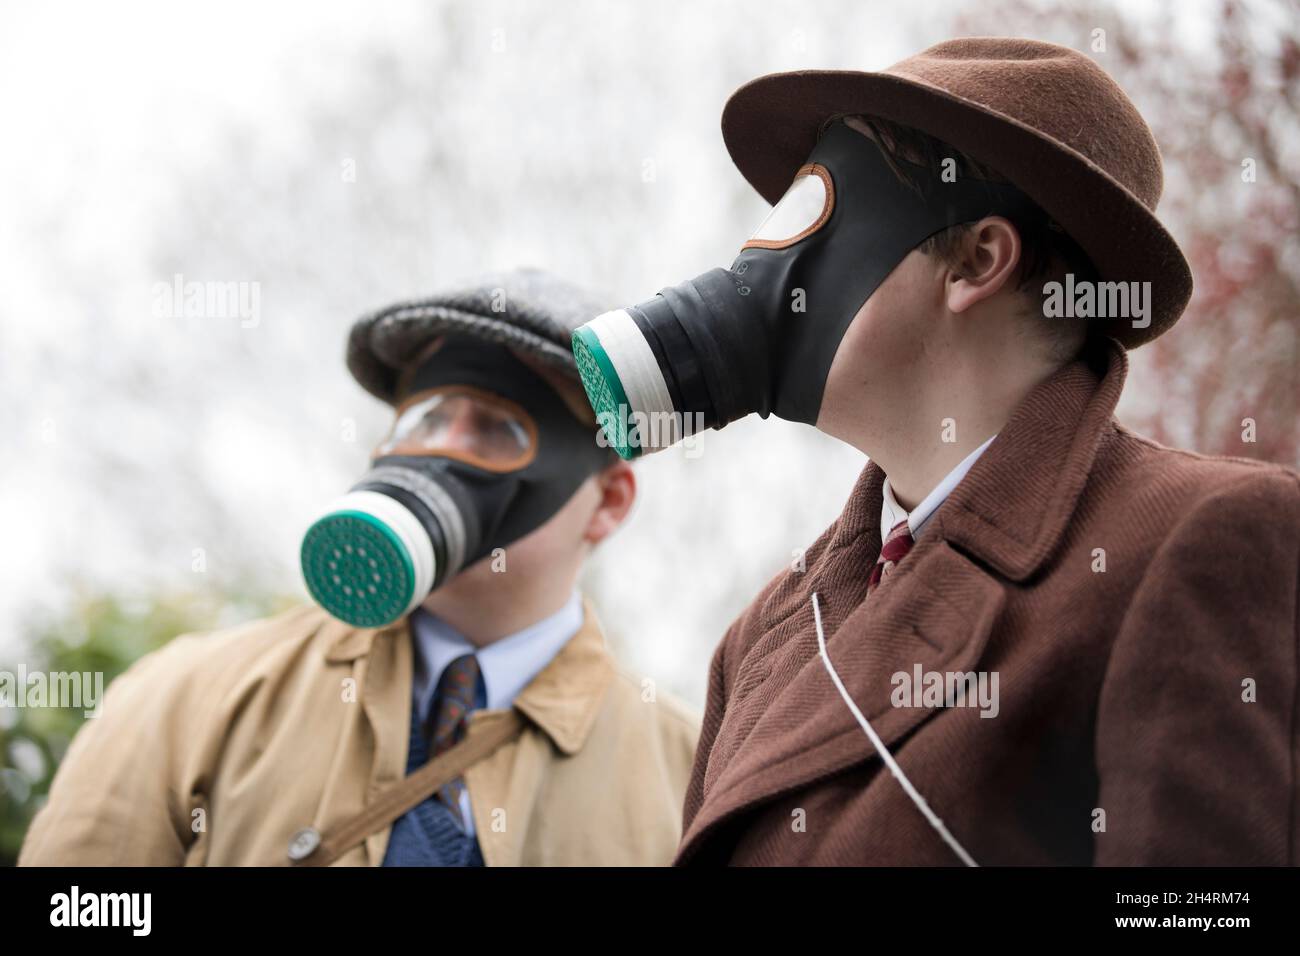 Les travailleurs de Cvilian en Grande-Bretagne en temps de guerre portent des masques à gaz lors de l'audition d'un avertissement de raid aérien. Banque D'Images